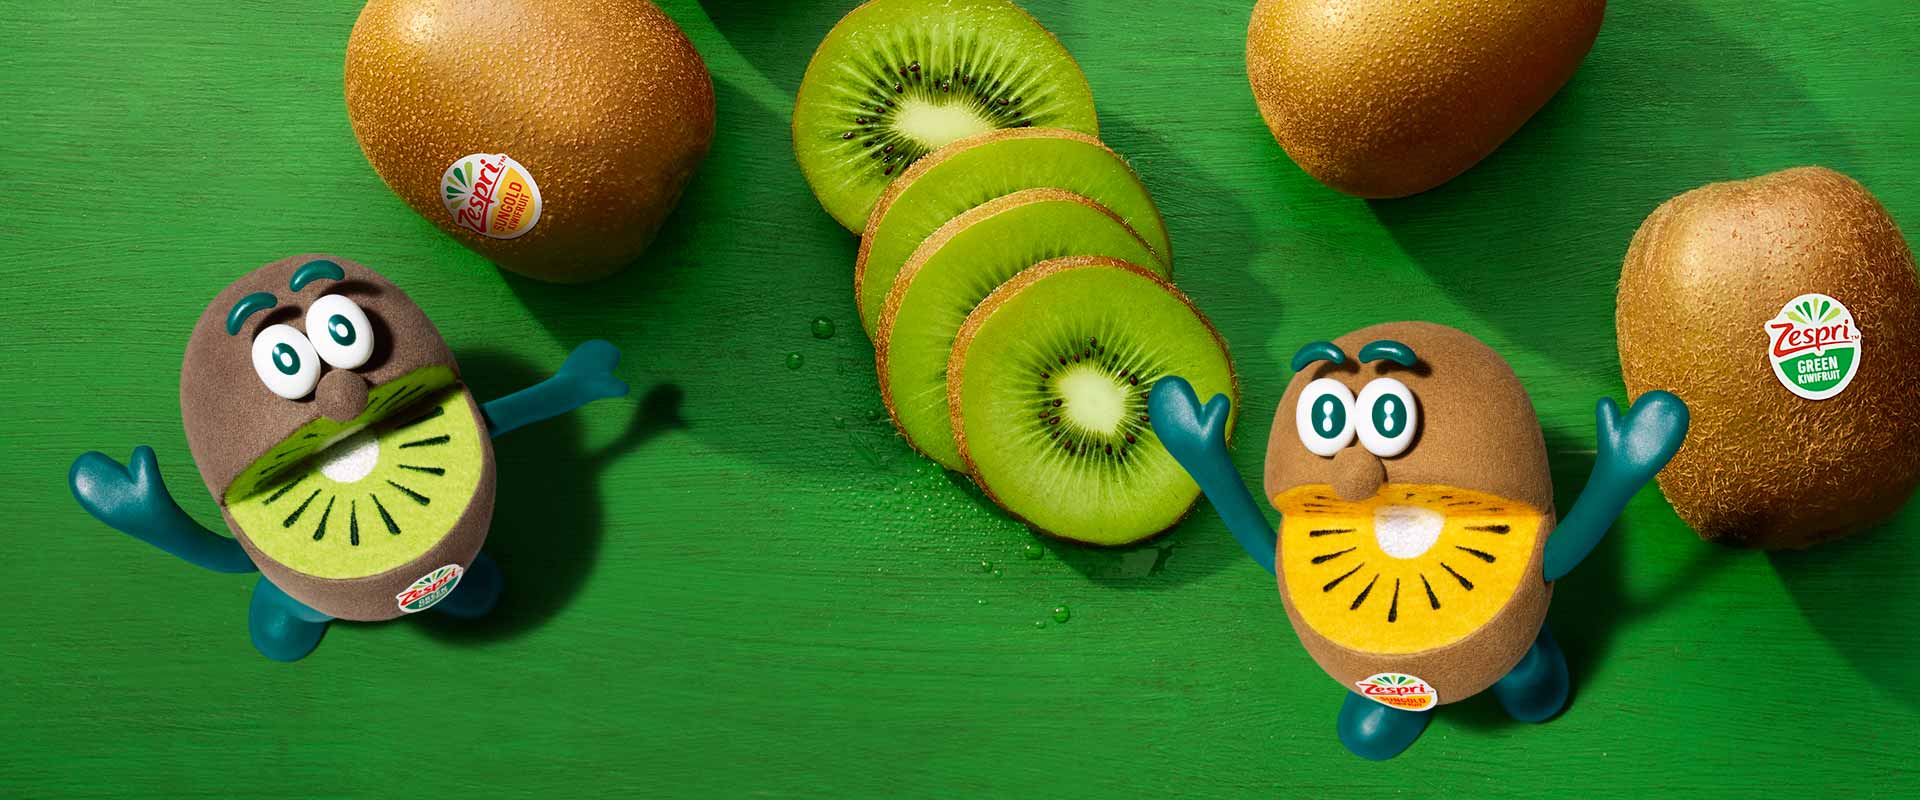 Combien de calories et de glucides contient un kiwi ? 